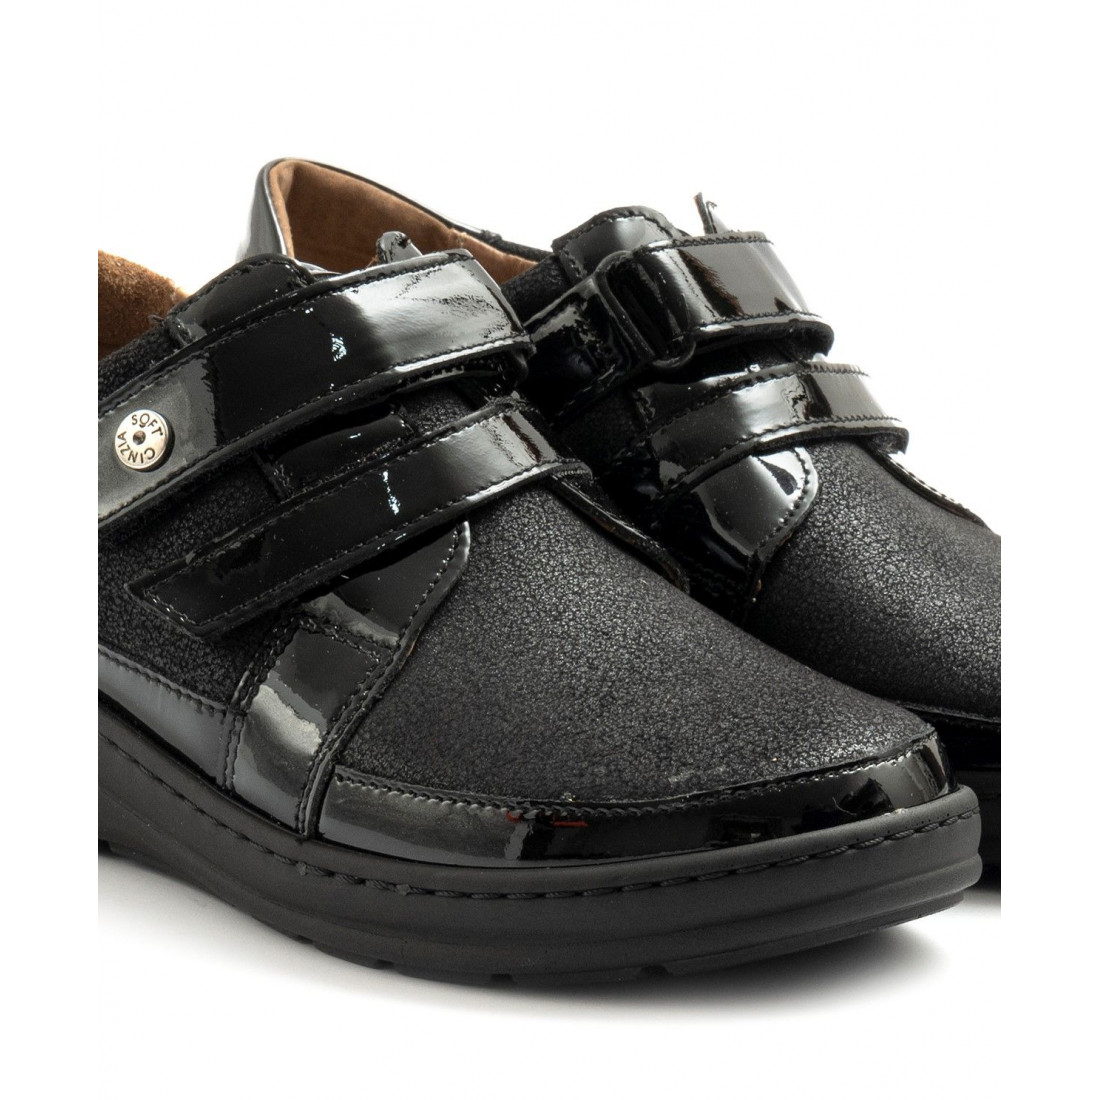 Zapato Cinzia Soft negro con doble rotura y plantilla